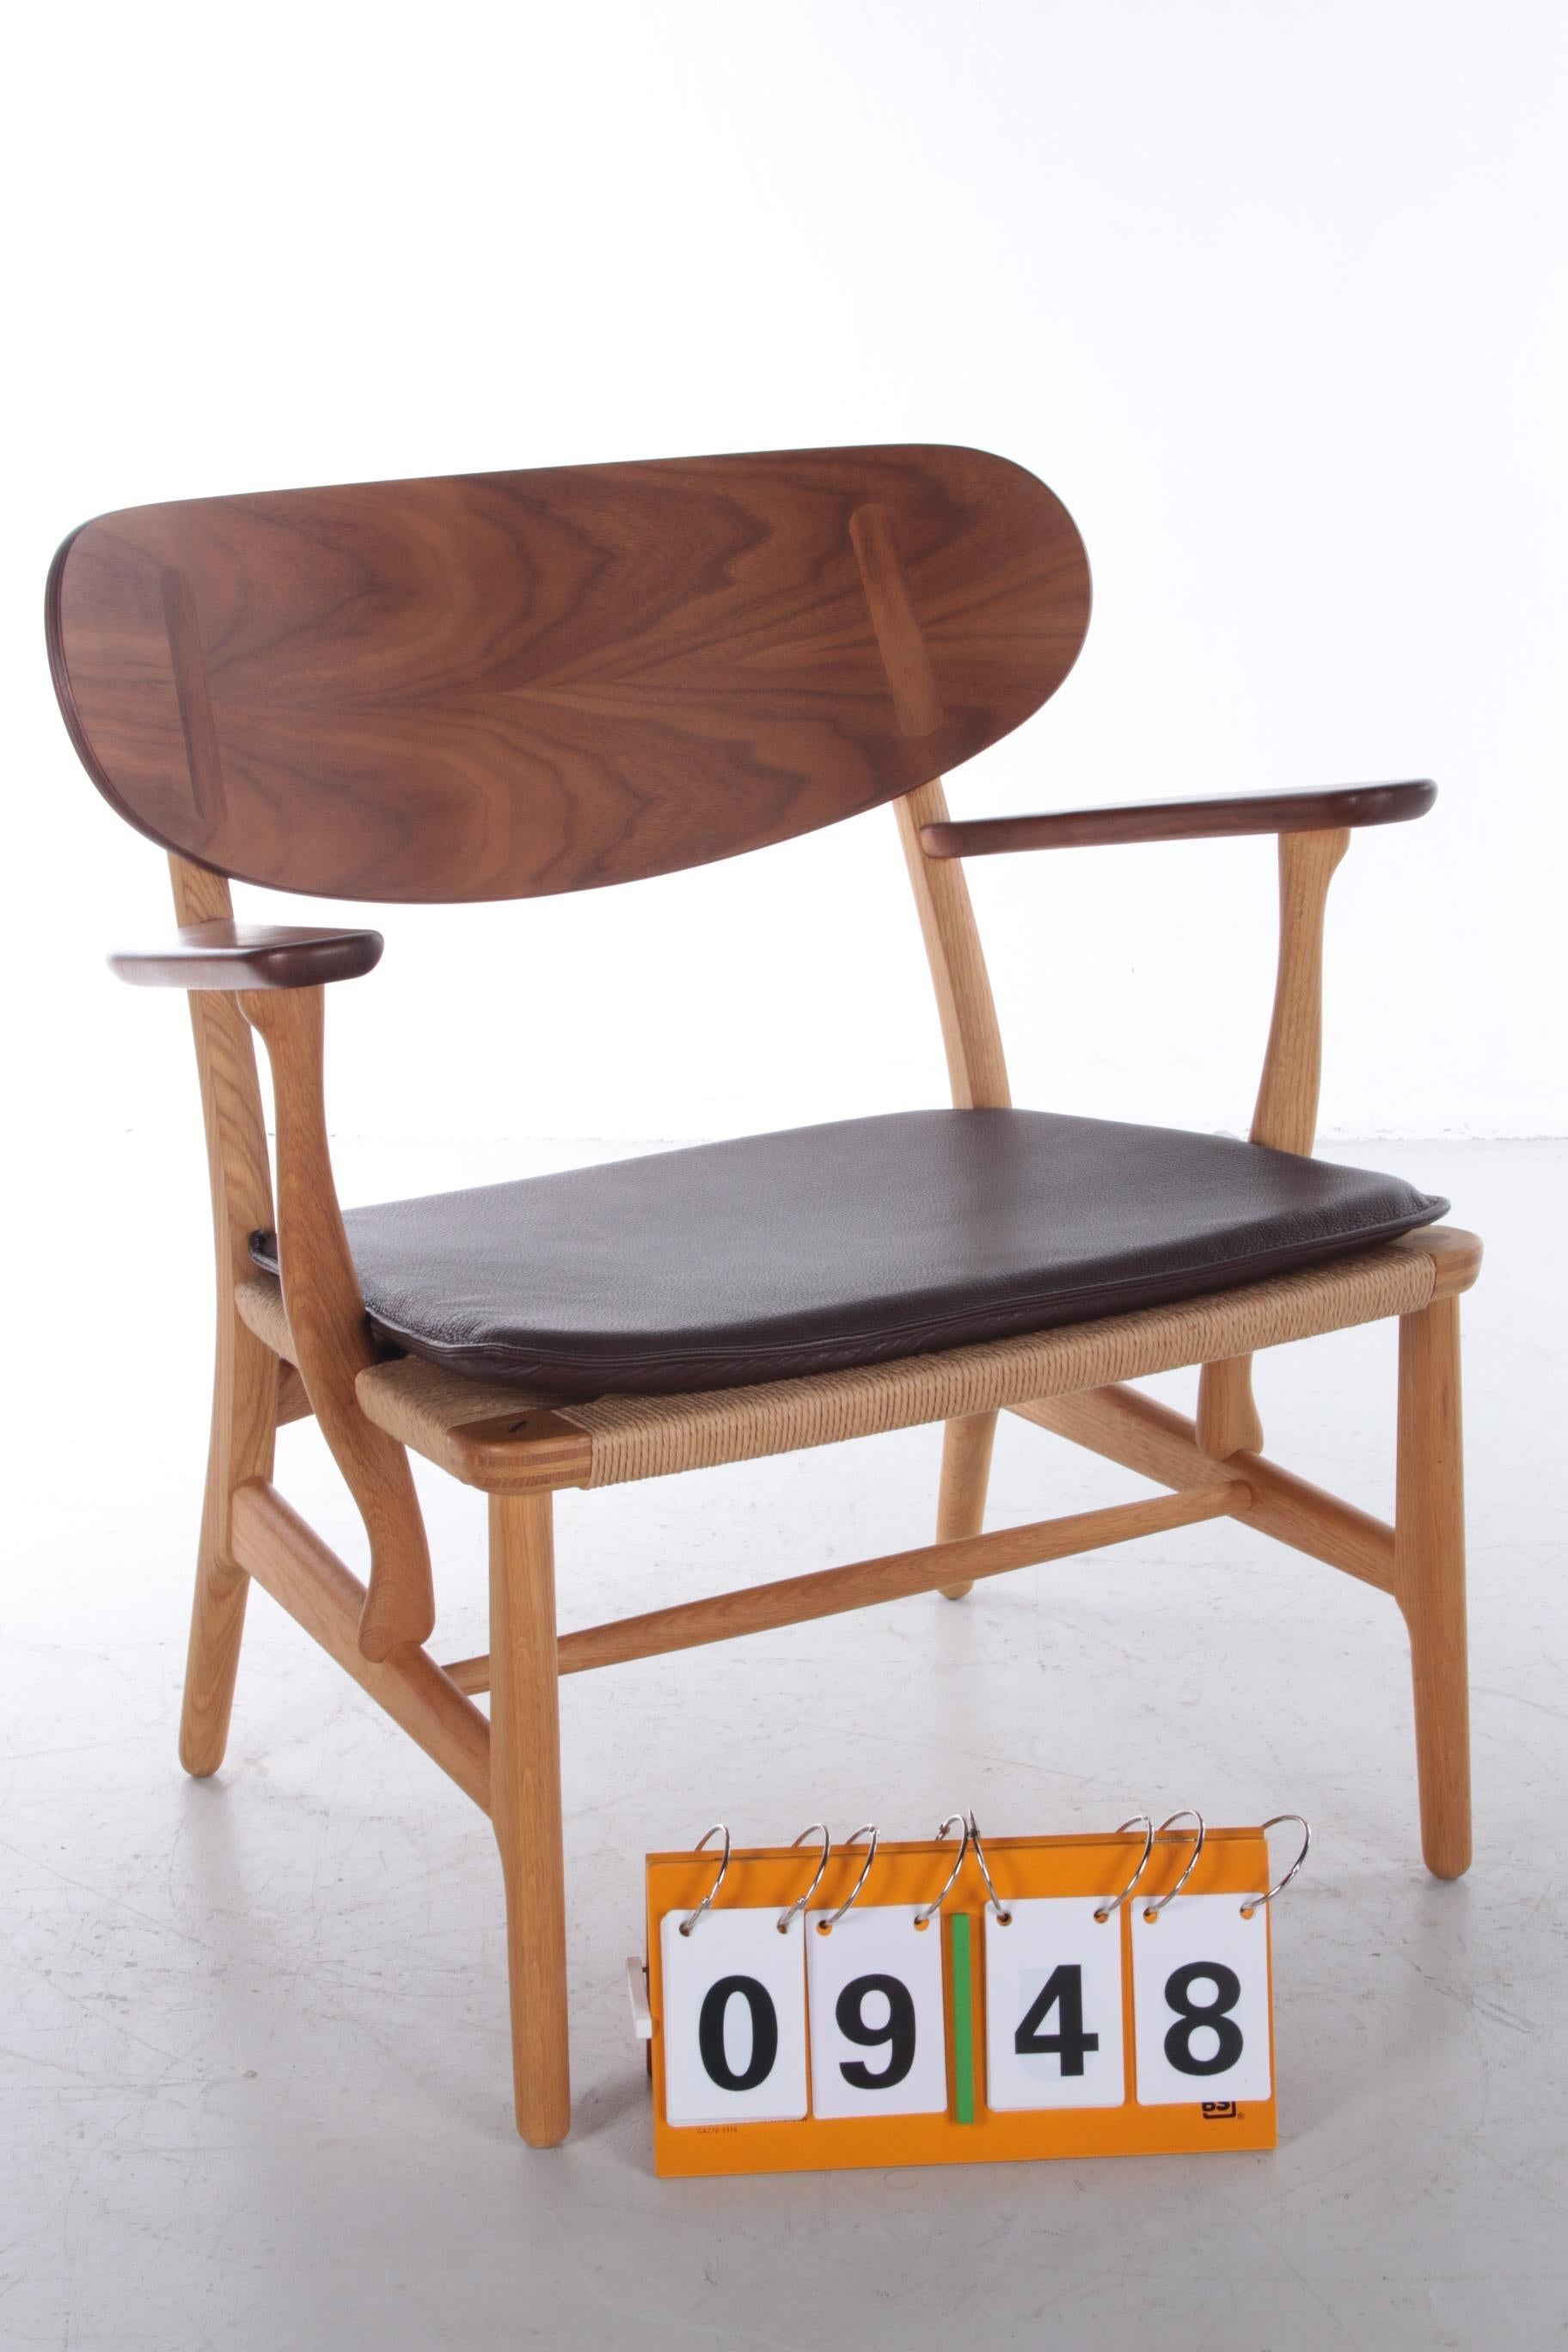 Danish Model Ch22 Lounge Chair by Hans J. Wegner for Carl Hansen & Søn